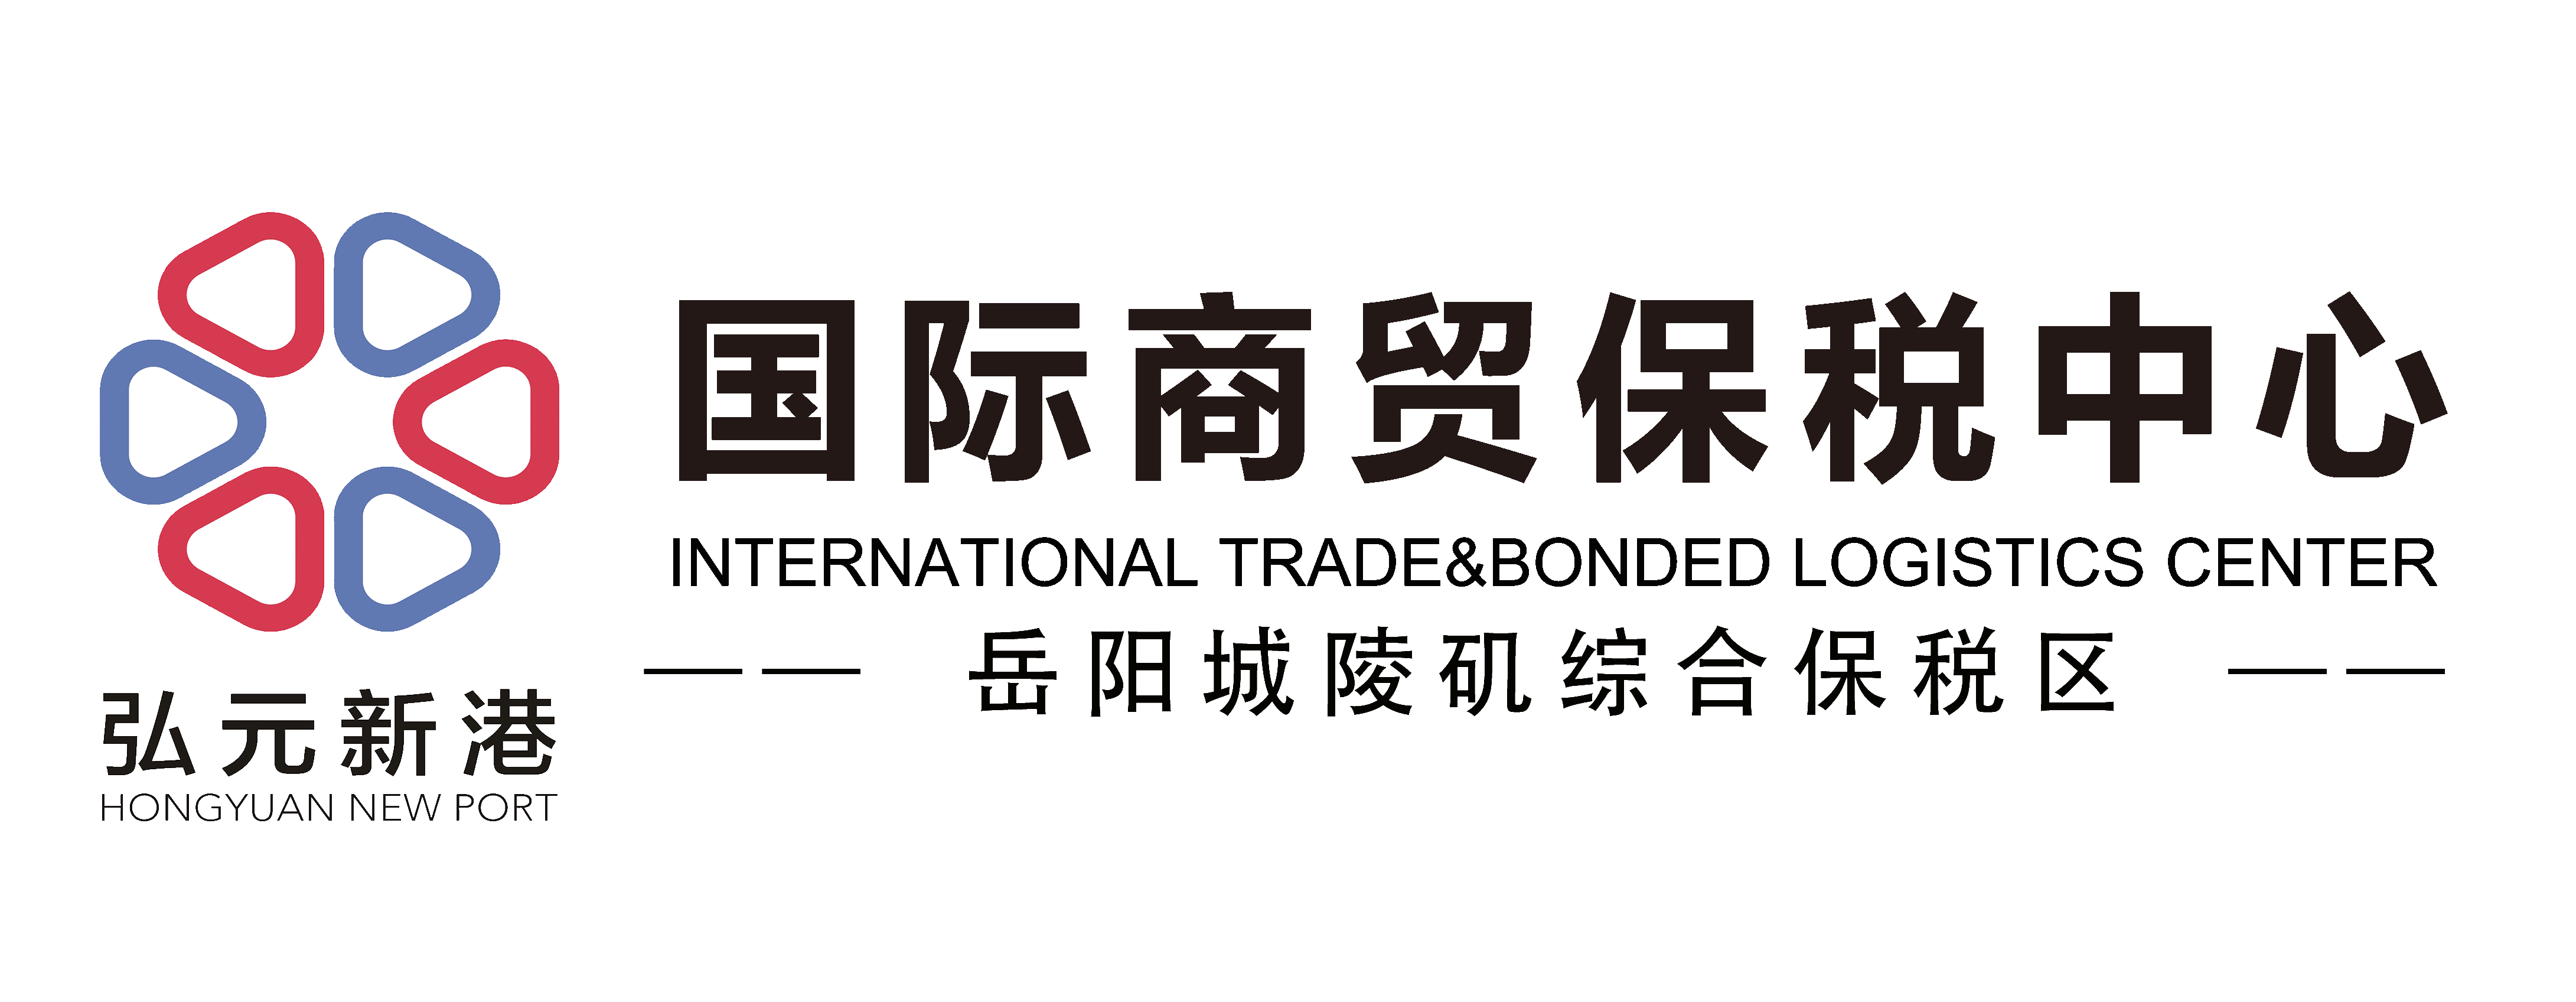 岳阳国际商贸保税中心